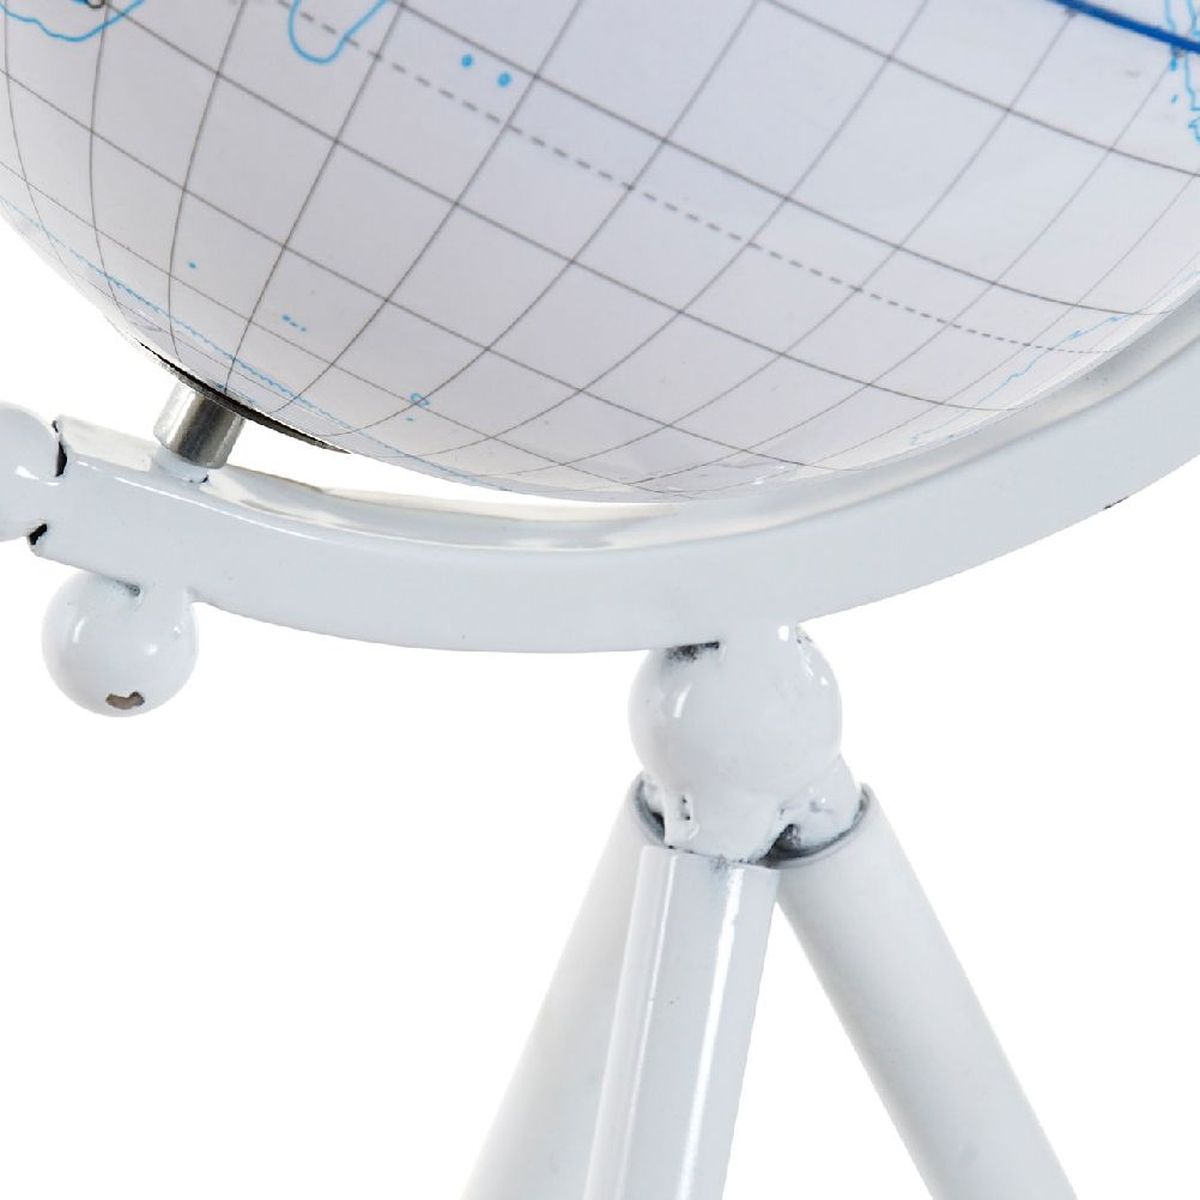 Globe Terrestre sur trpied - 36 cm